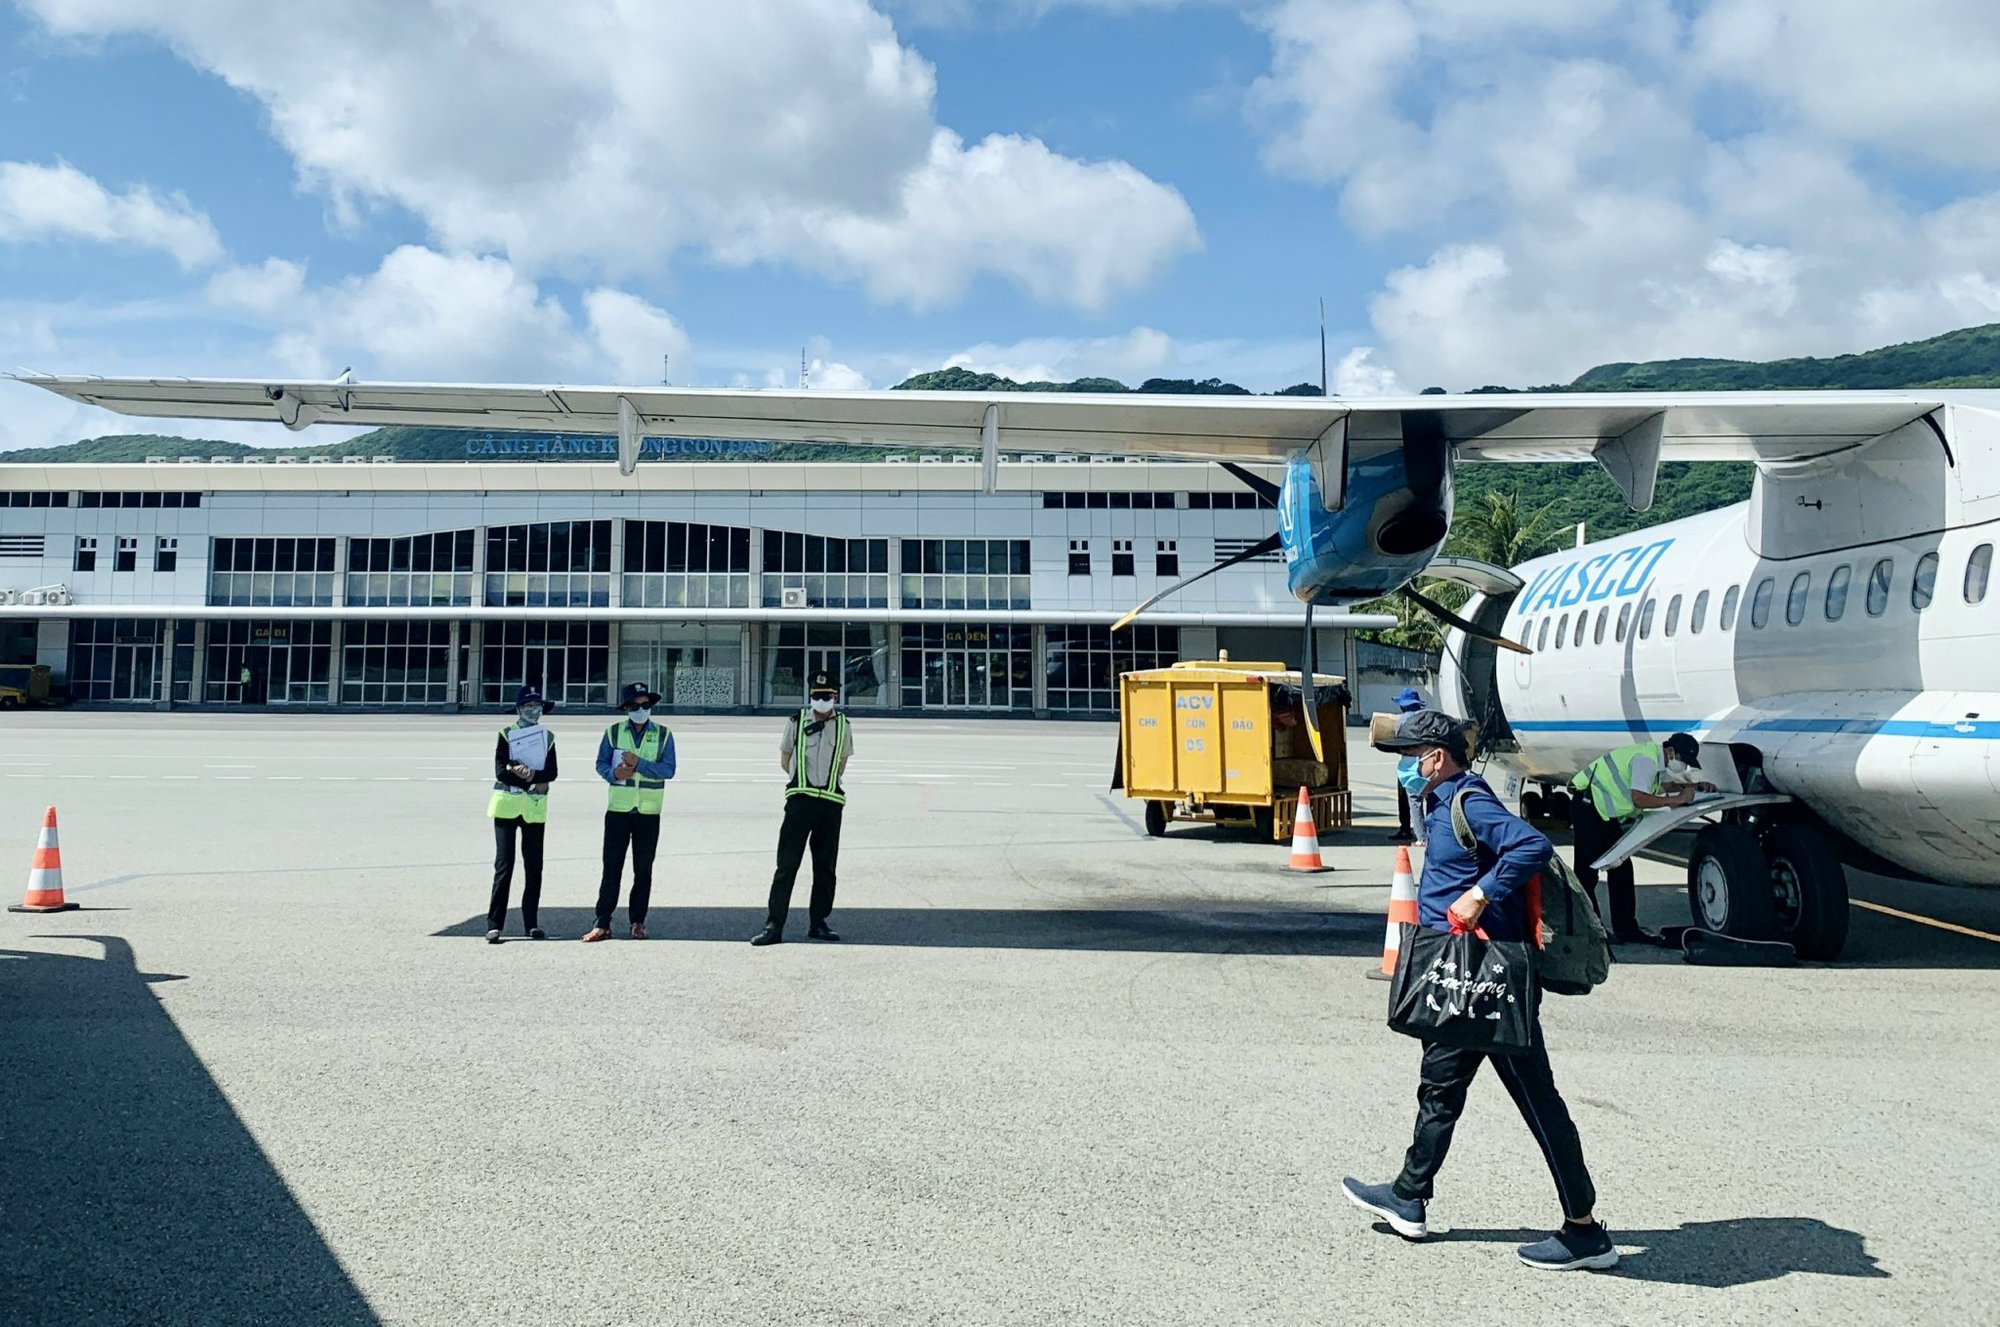 Du lịch tăng trưởng, đường bay TP.HCM – Côn Đảo vận chuyển hơn 4 triệu lượt khách- Ảnh 1.